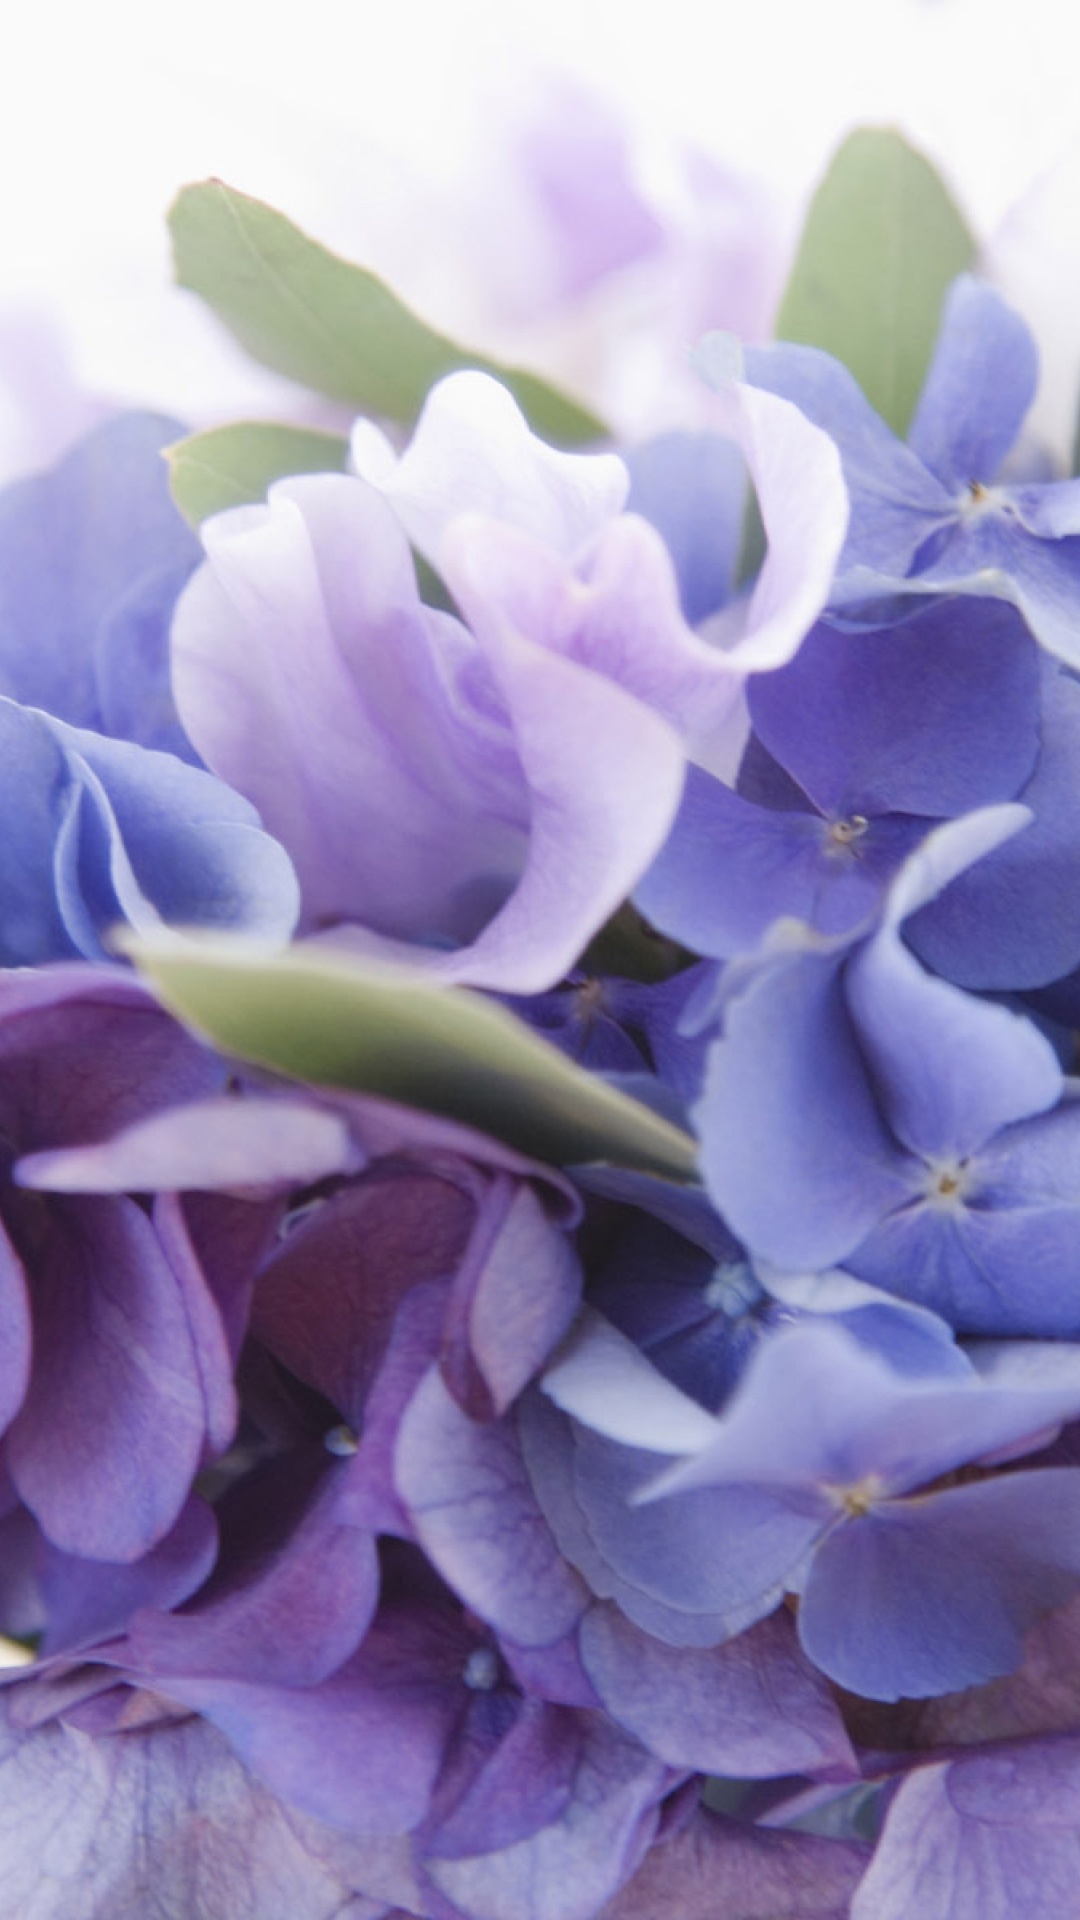 显花植物, 淡紫色的, 紫色的, 紫罗兰色, Hydrangeaceae 壁纸 1080x1920 允许